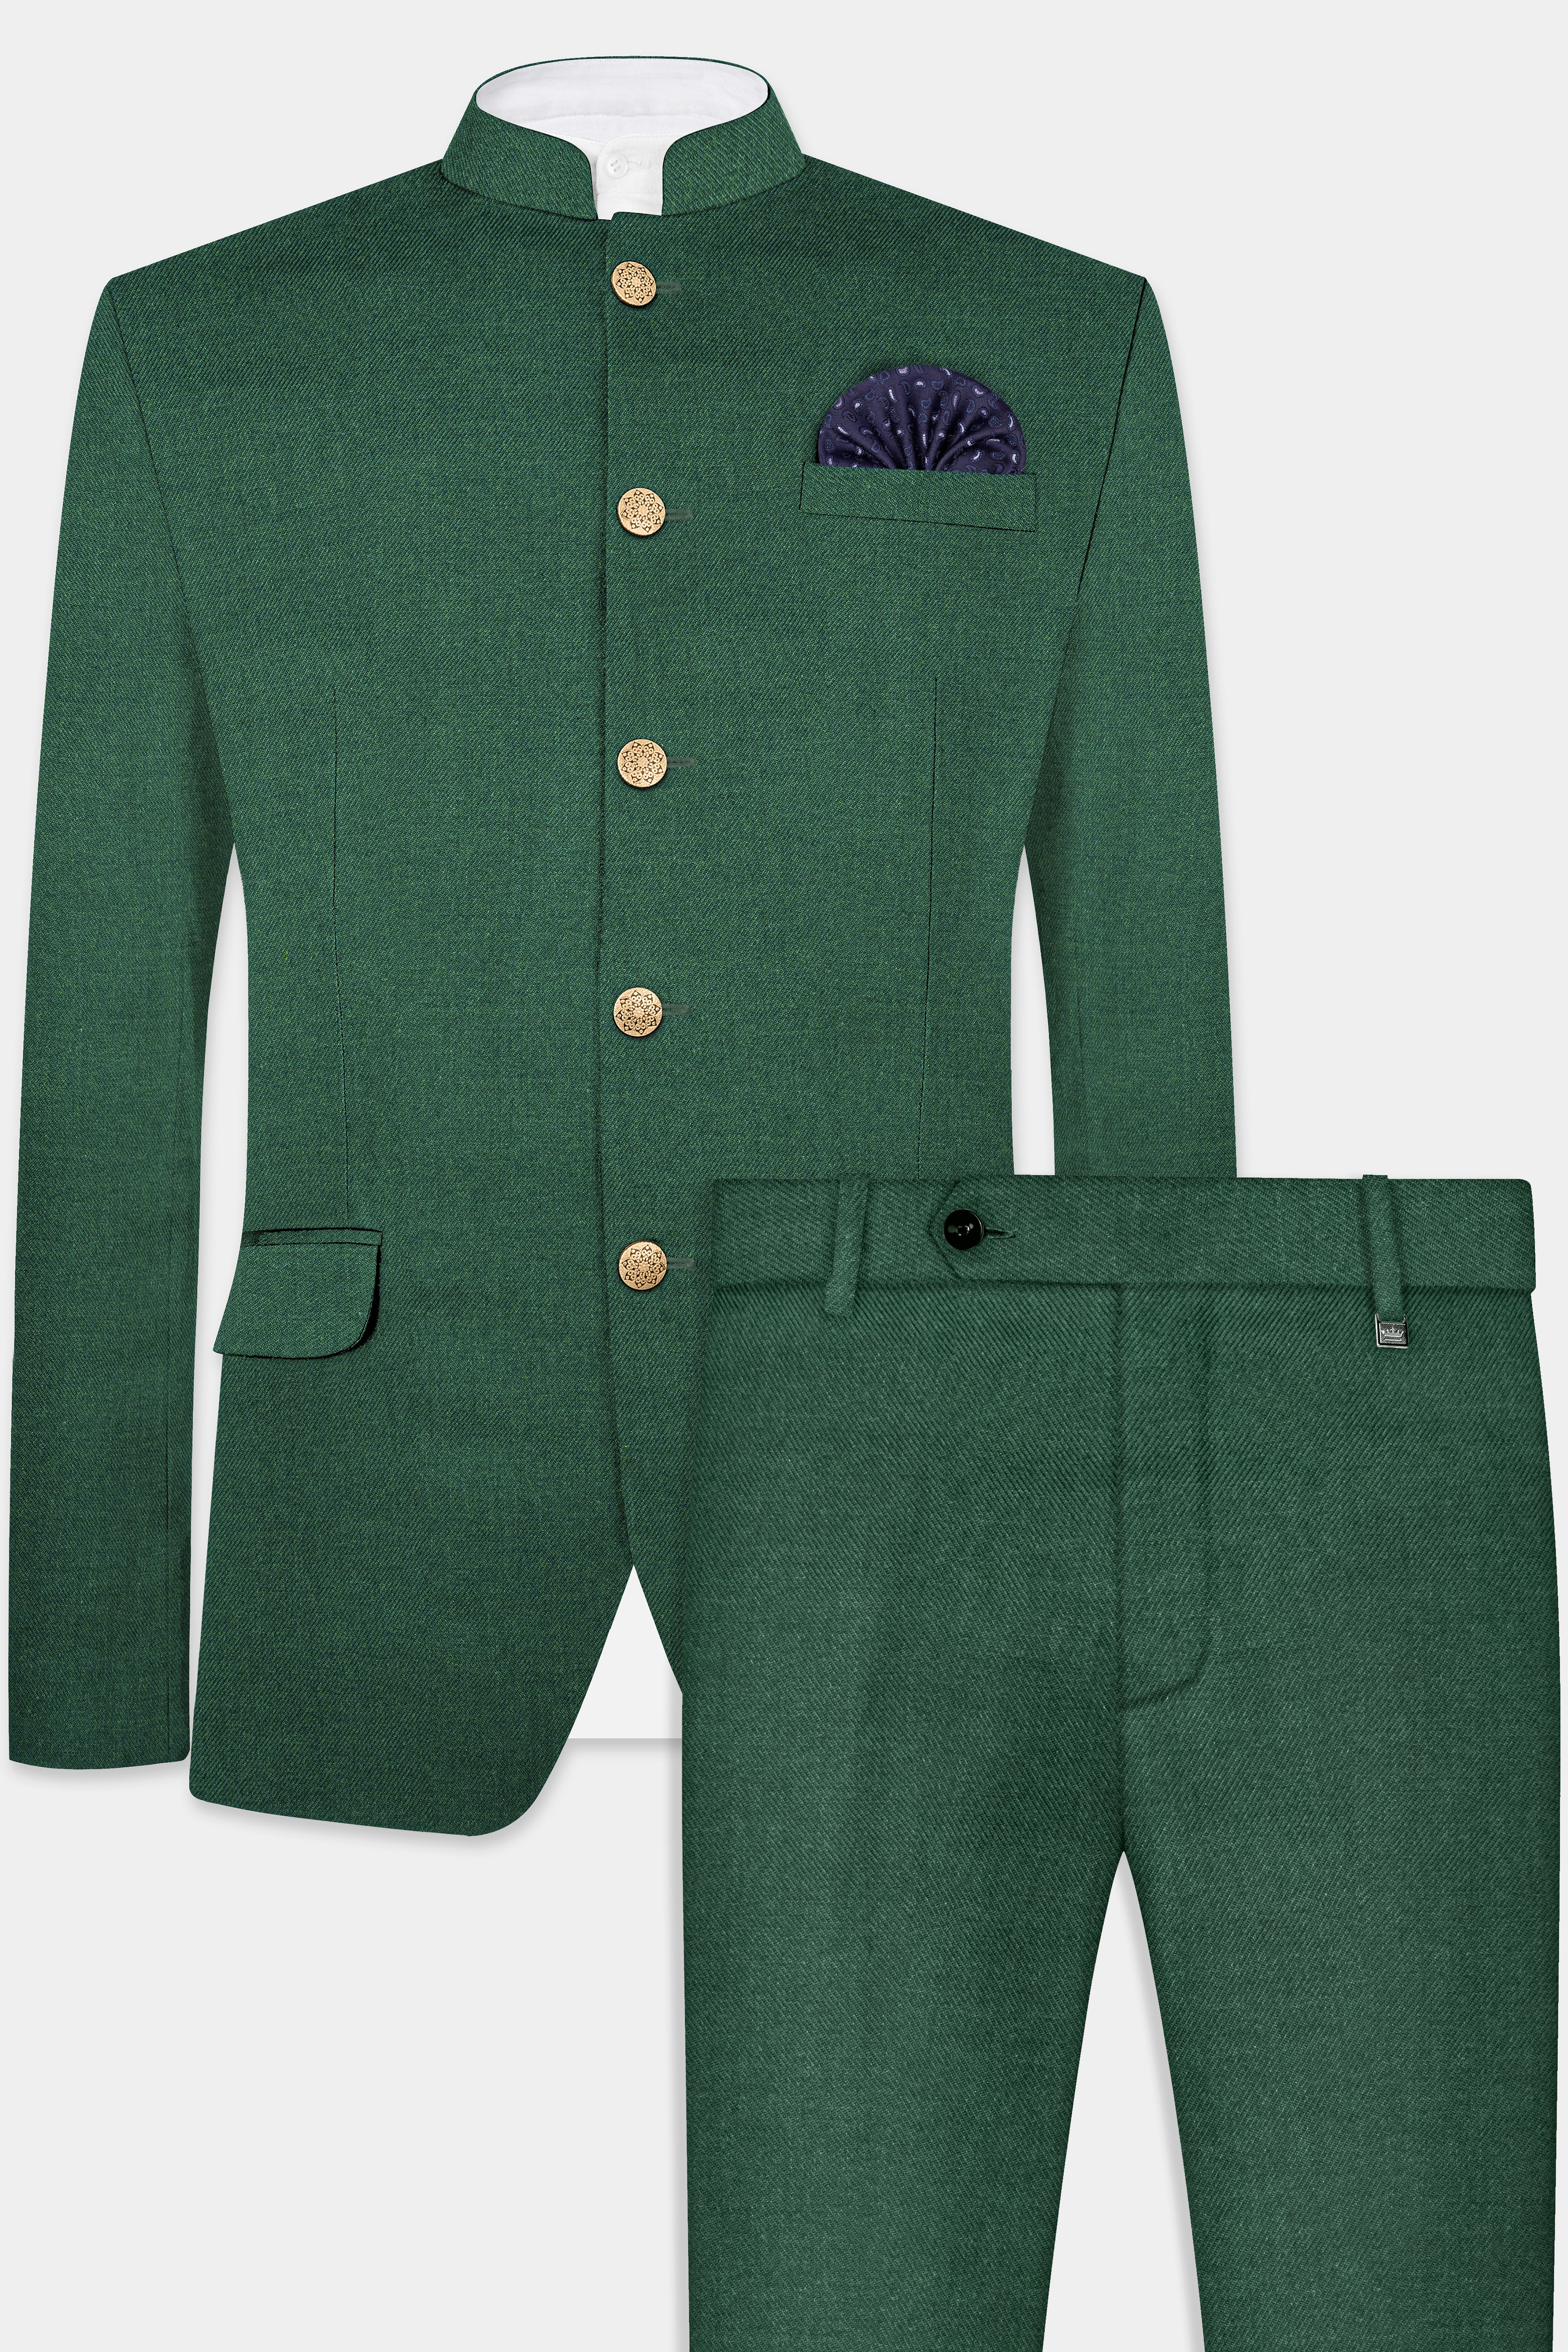 Plantation Green Tweed Bandhgala Suit